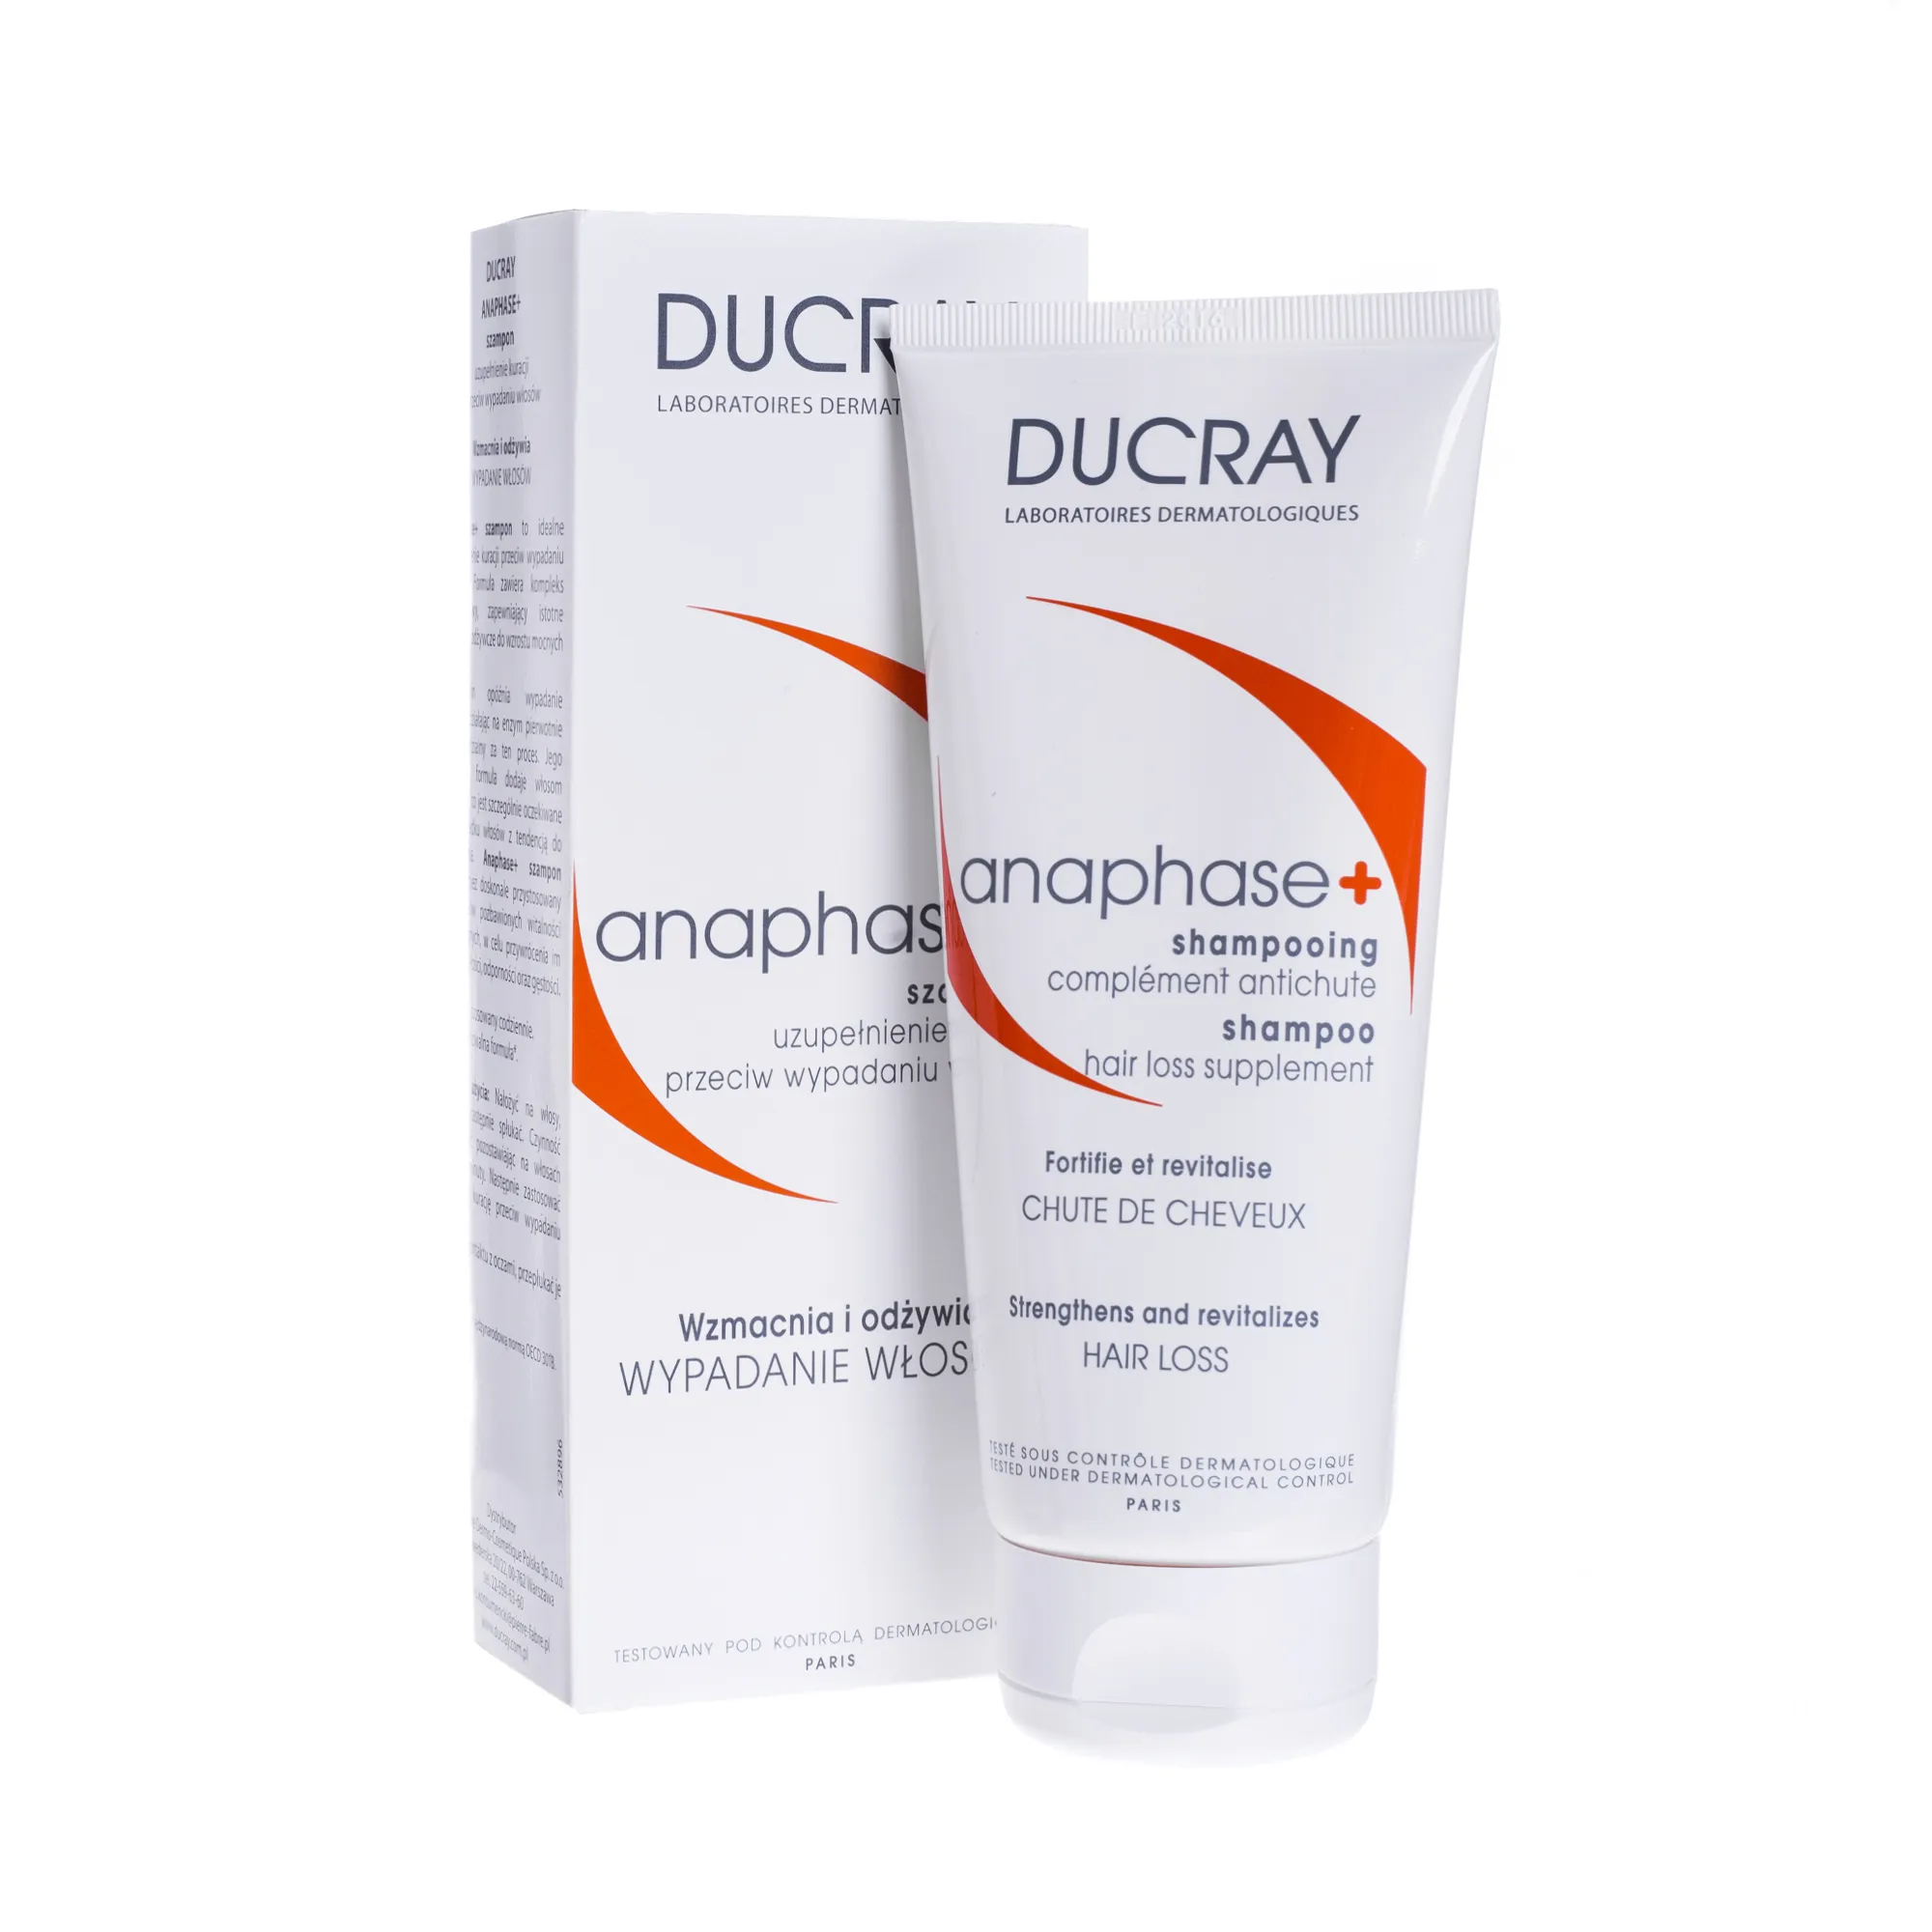 ducray anaphase+ szampon przeciw wypadaniu włosów 400ml cena